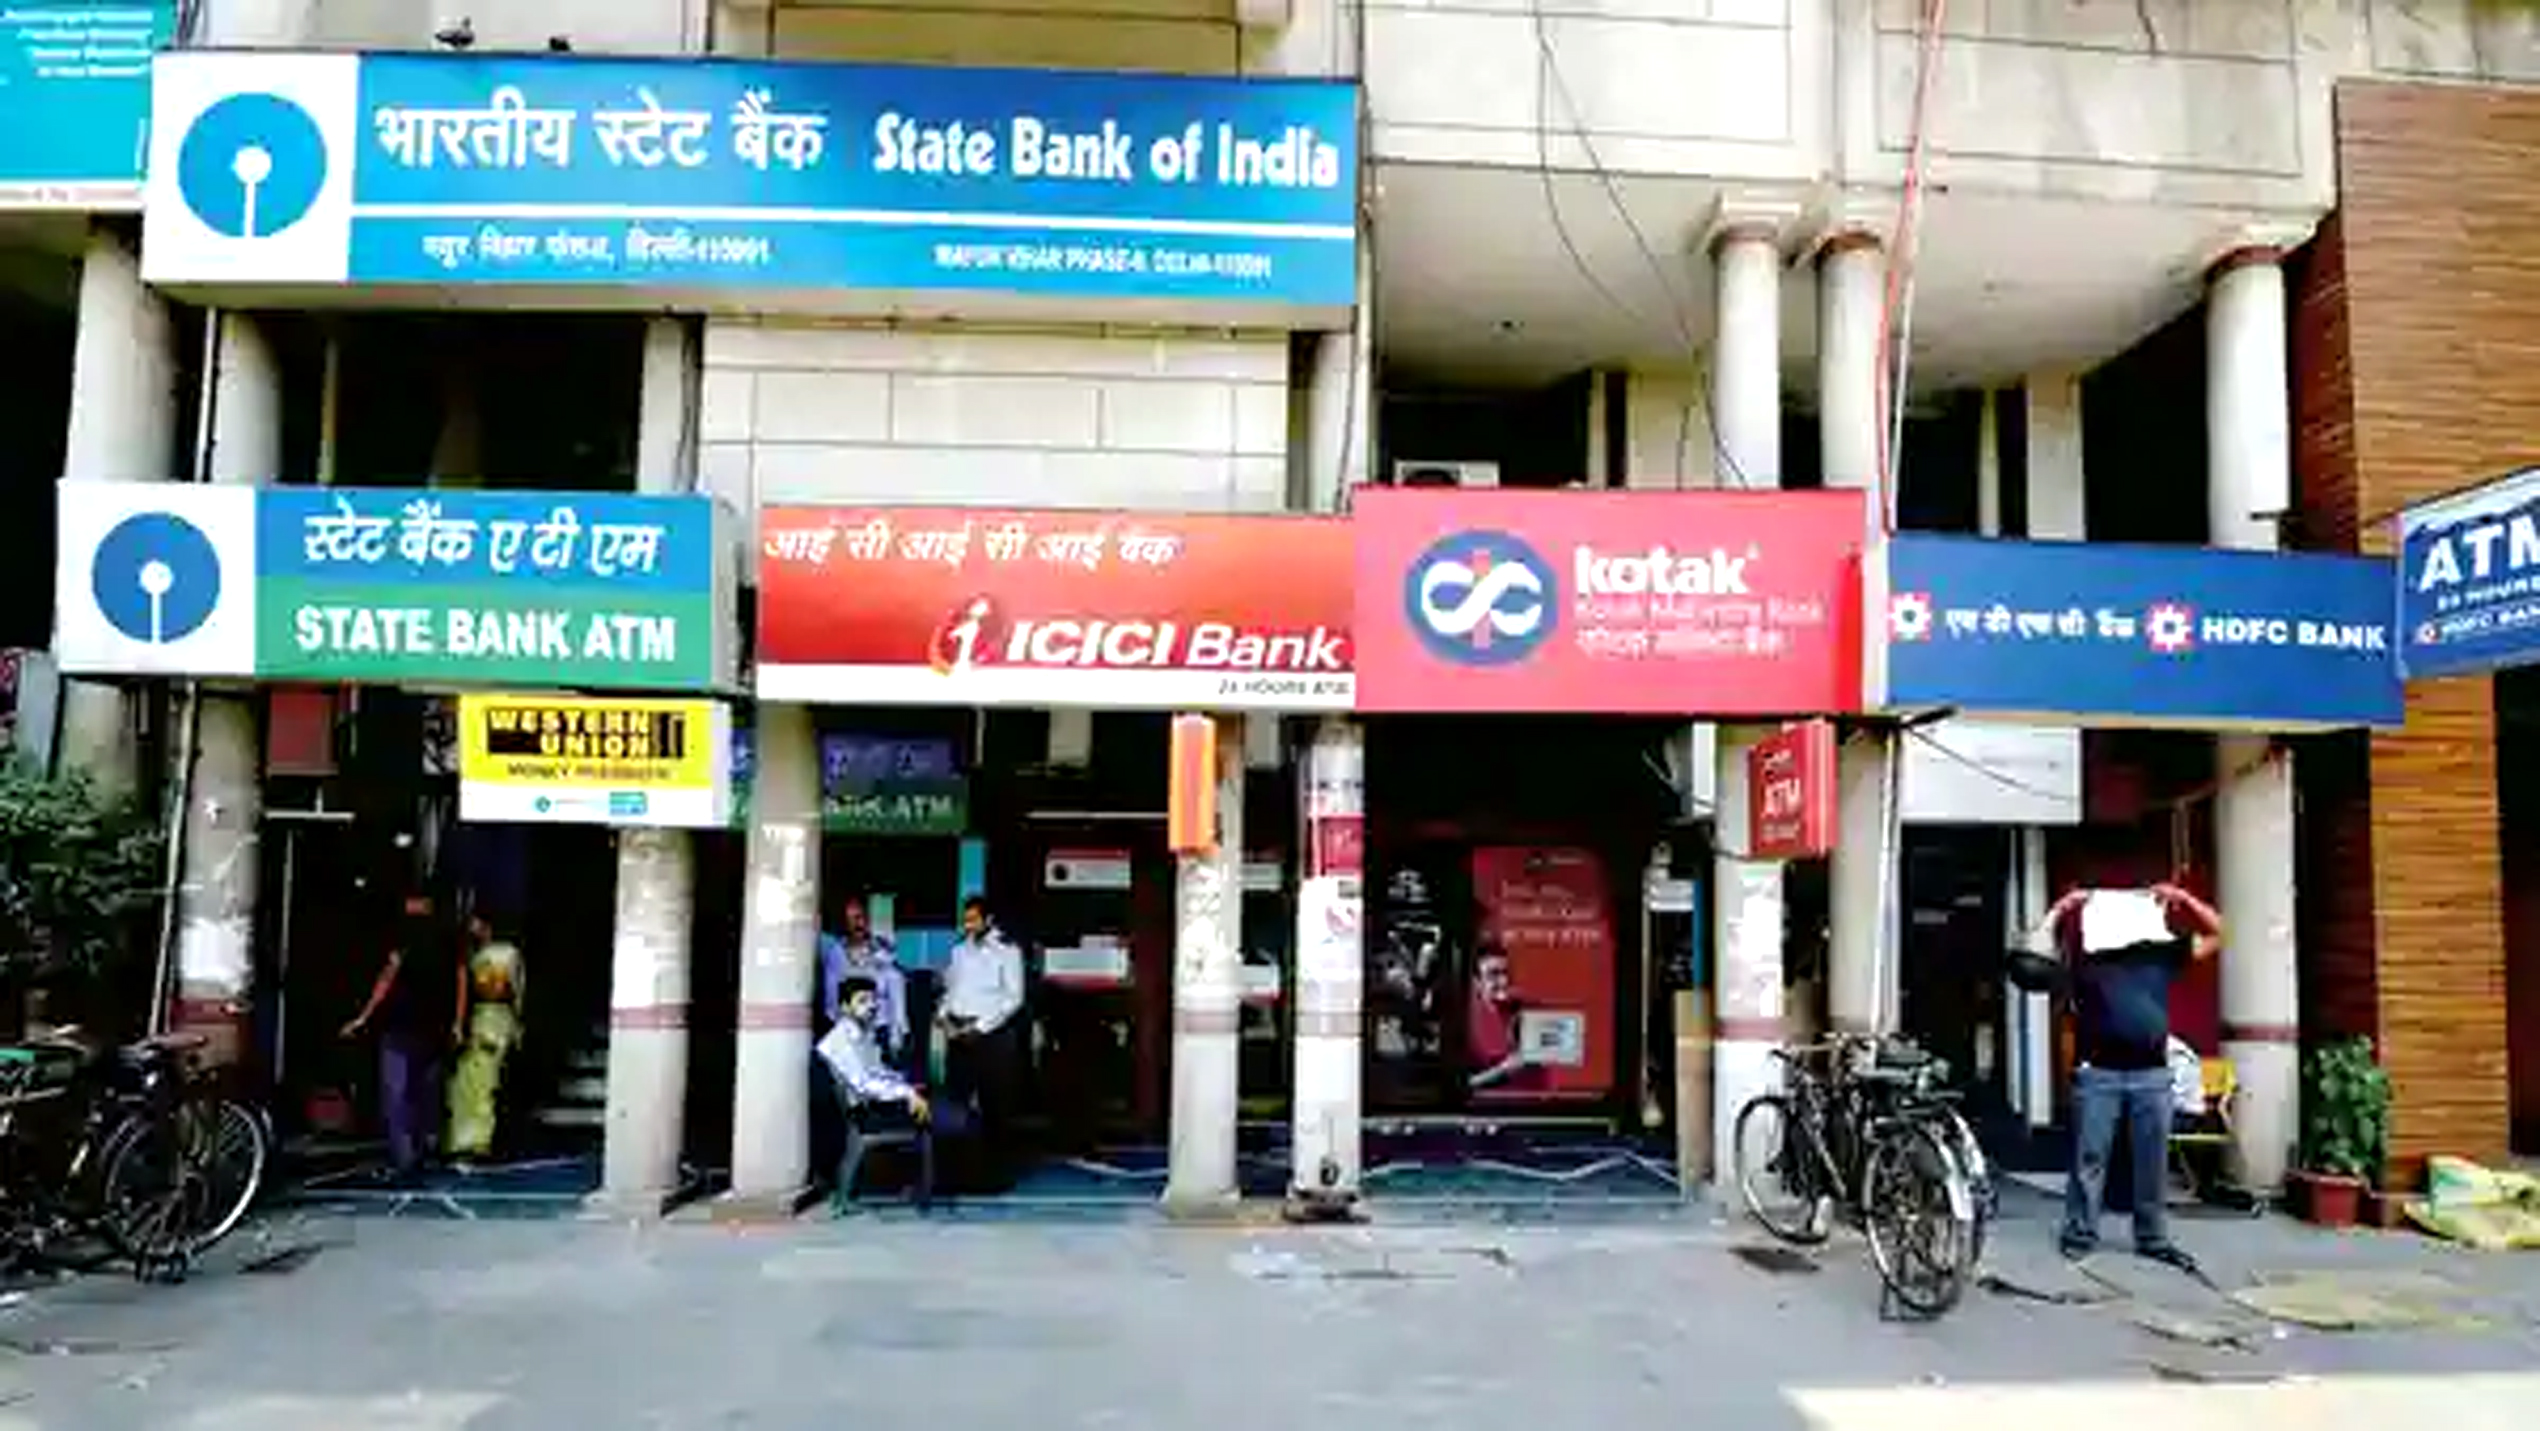 31 मार्च तक खुले रहेंगे सभी बैंक, सालाना क्लोजिंग के लिए RBI का आदेश